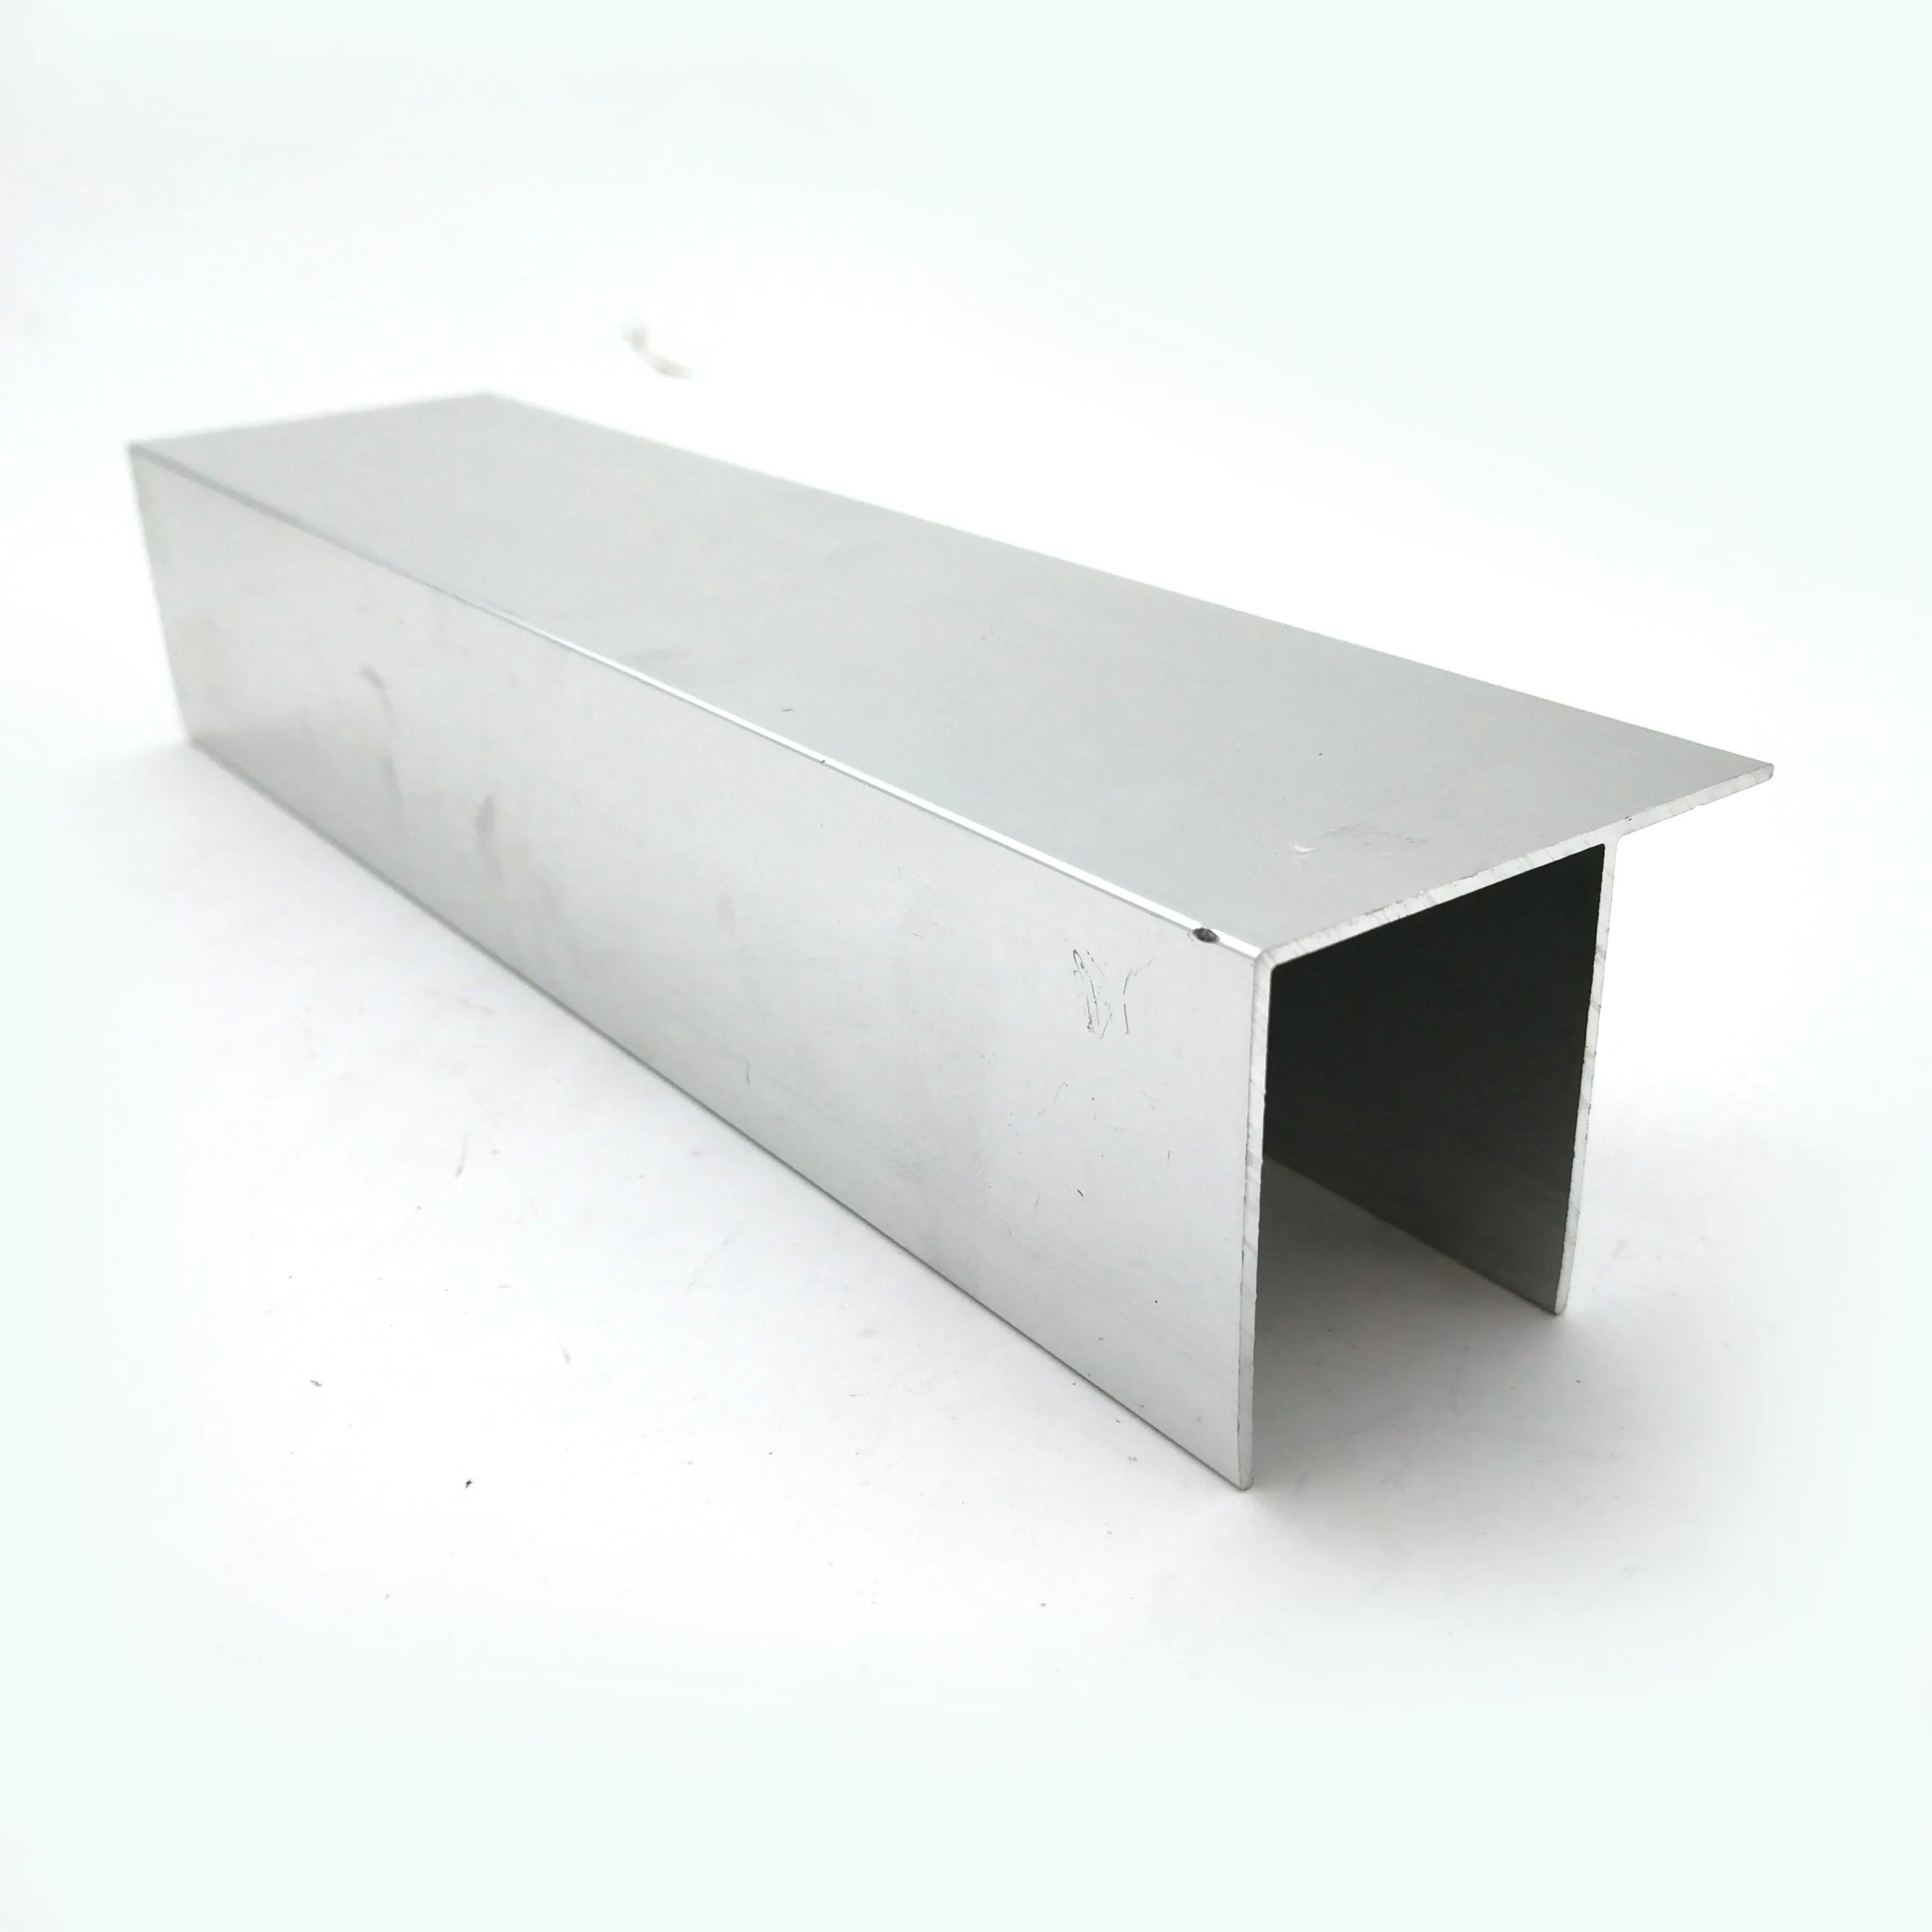 Cina fornitore di estrusione profili in alluminio doccia alluminio estrusione alluminio profilo dello schermo doccia